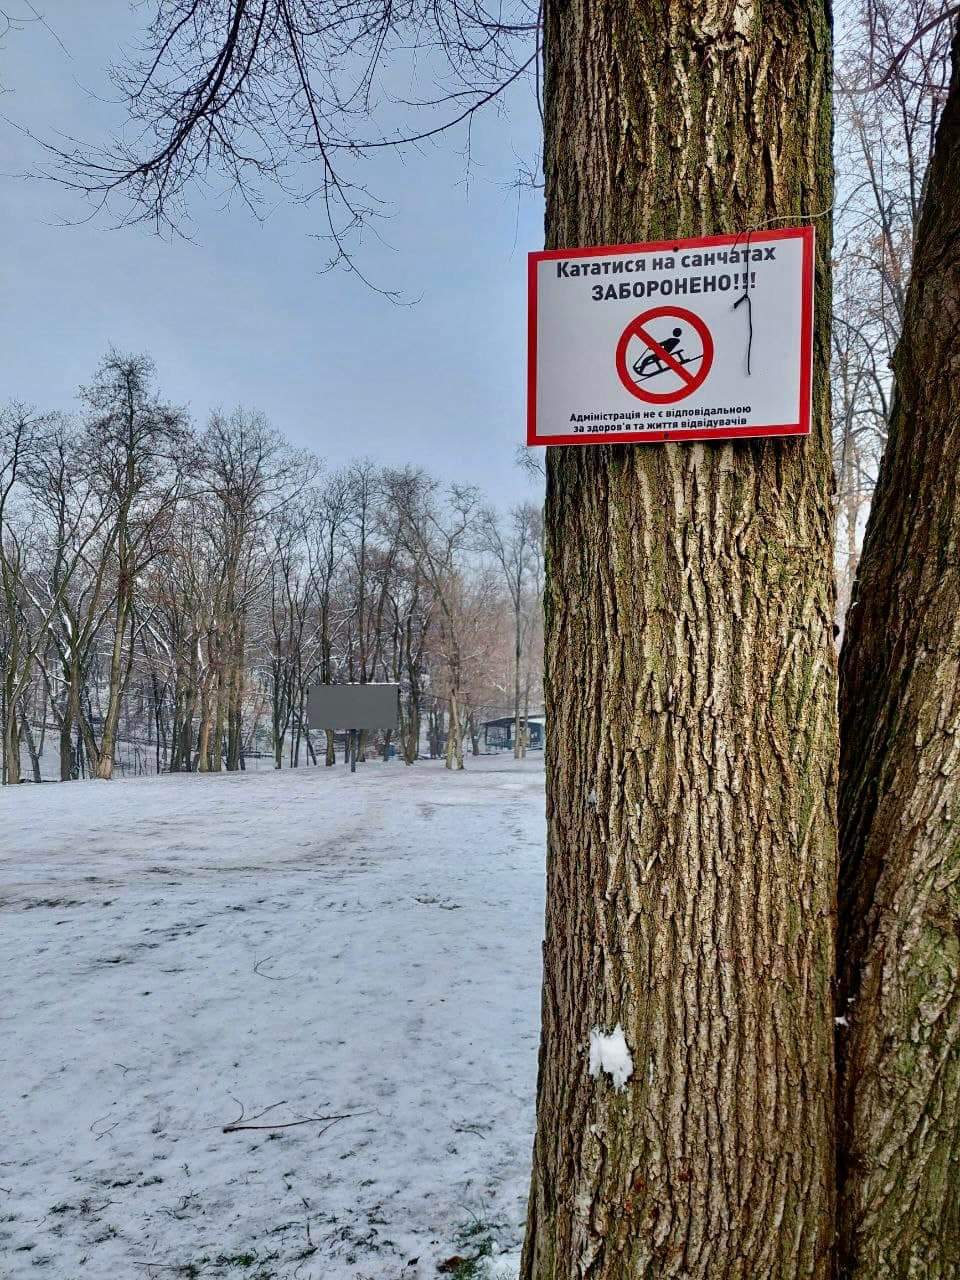 Новости Днепра про В парках Днепра запретили спускаться на санках или лыжах